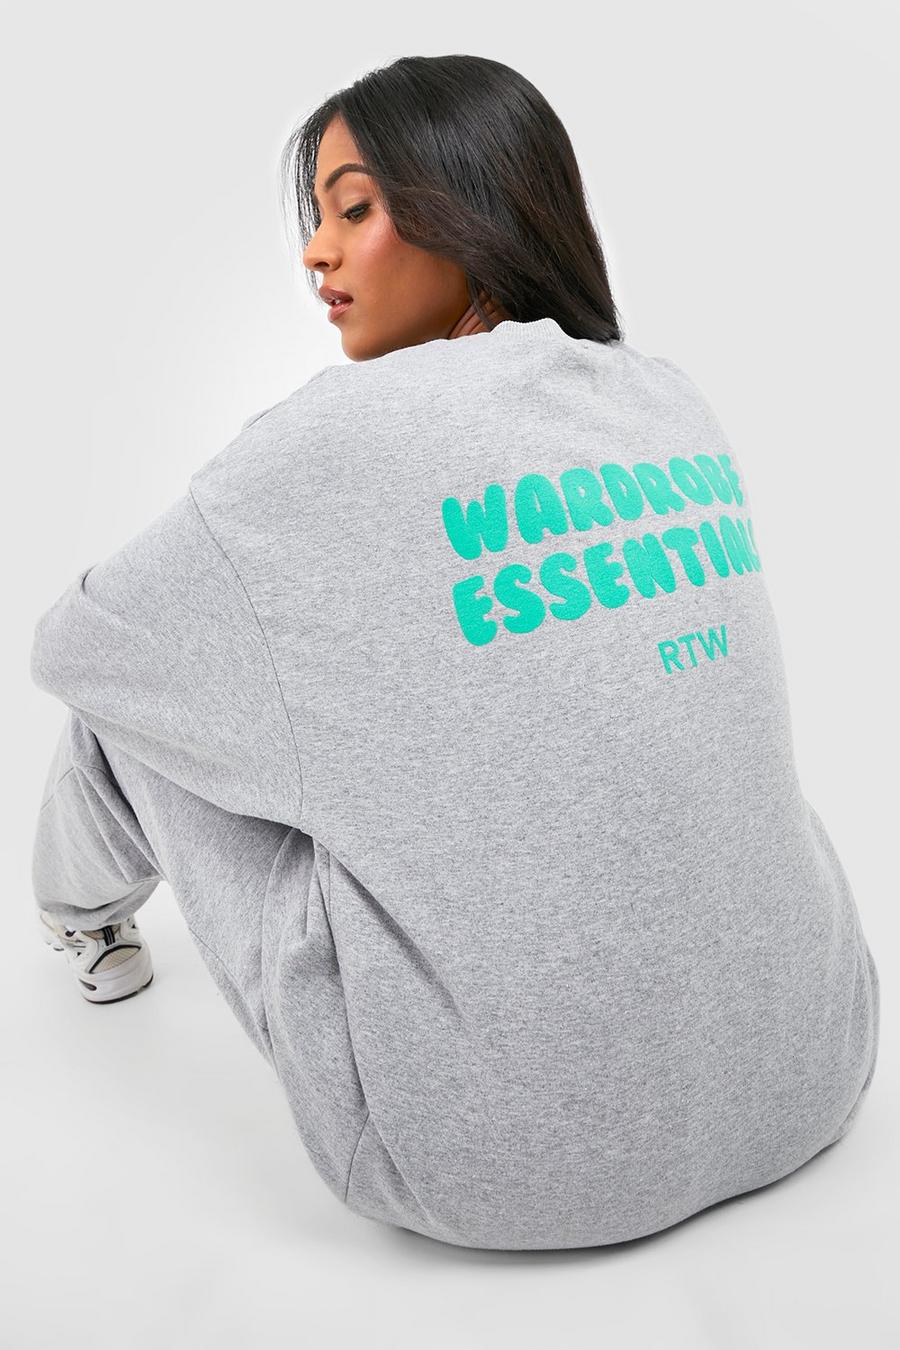 Tall Oversize Sweatshirt mit Wardrobe Essentials Slogan, Grey gris